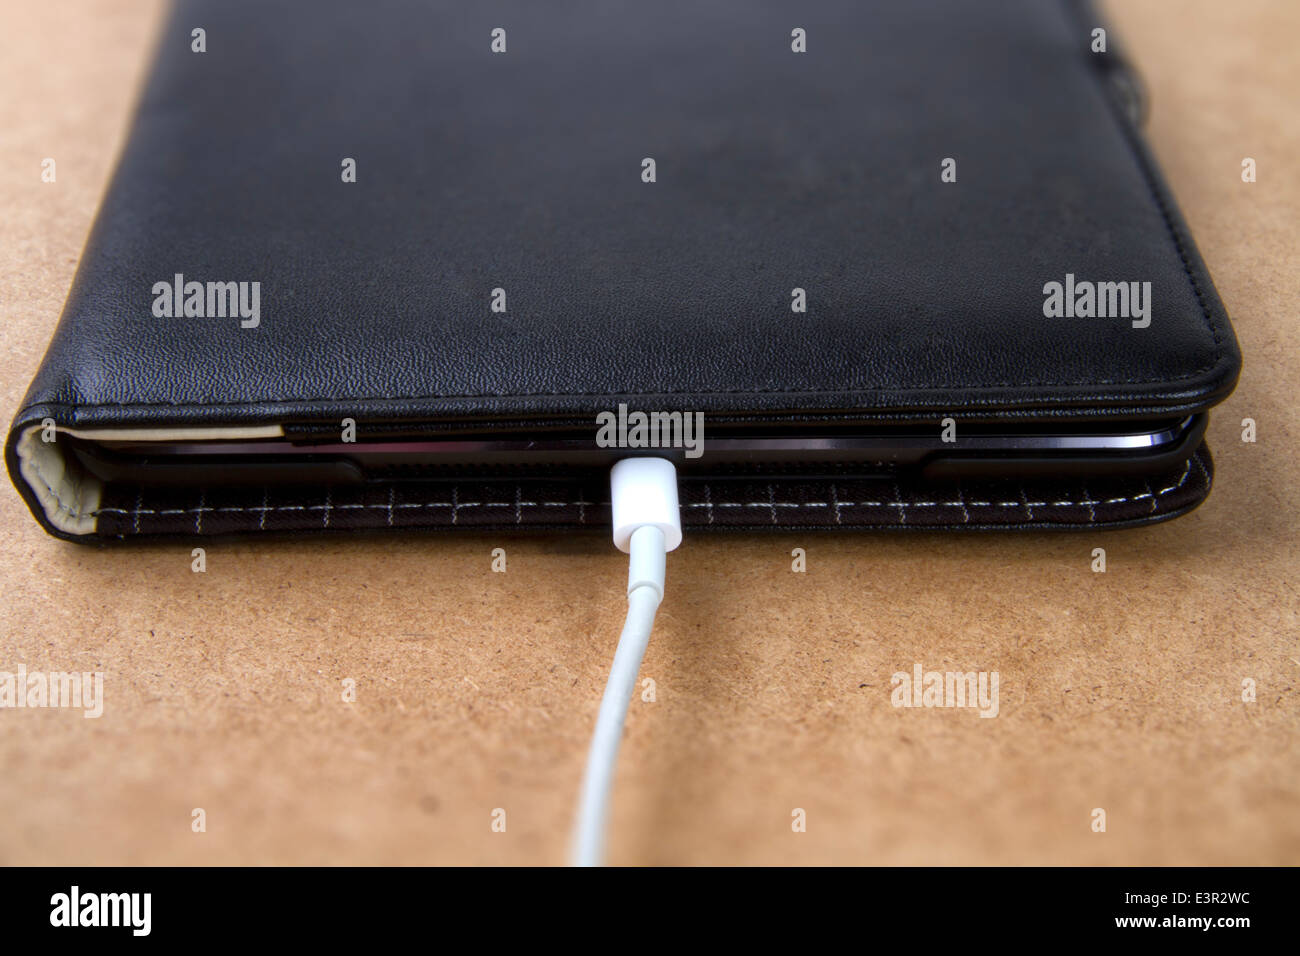 Câble de charge connecté à un iPad mini Banque D'Images